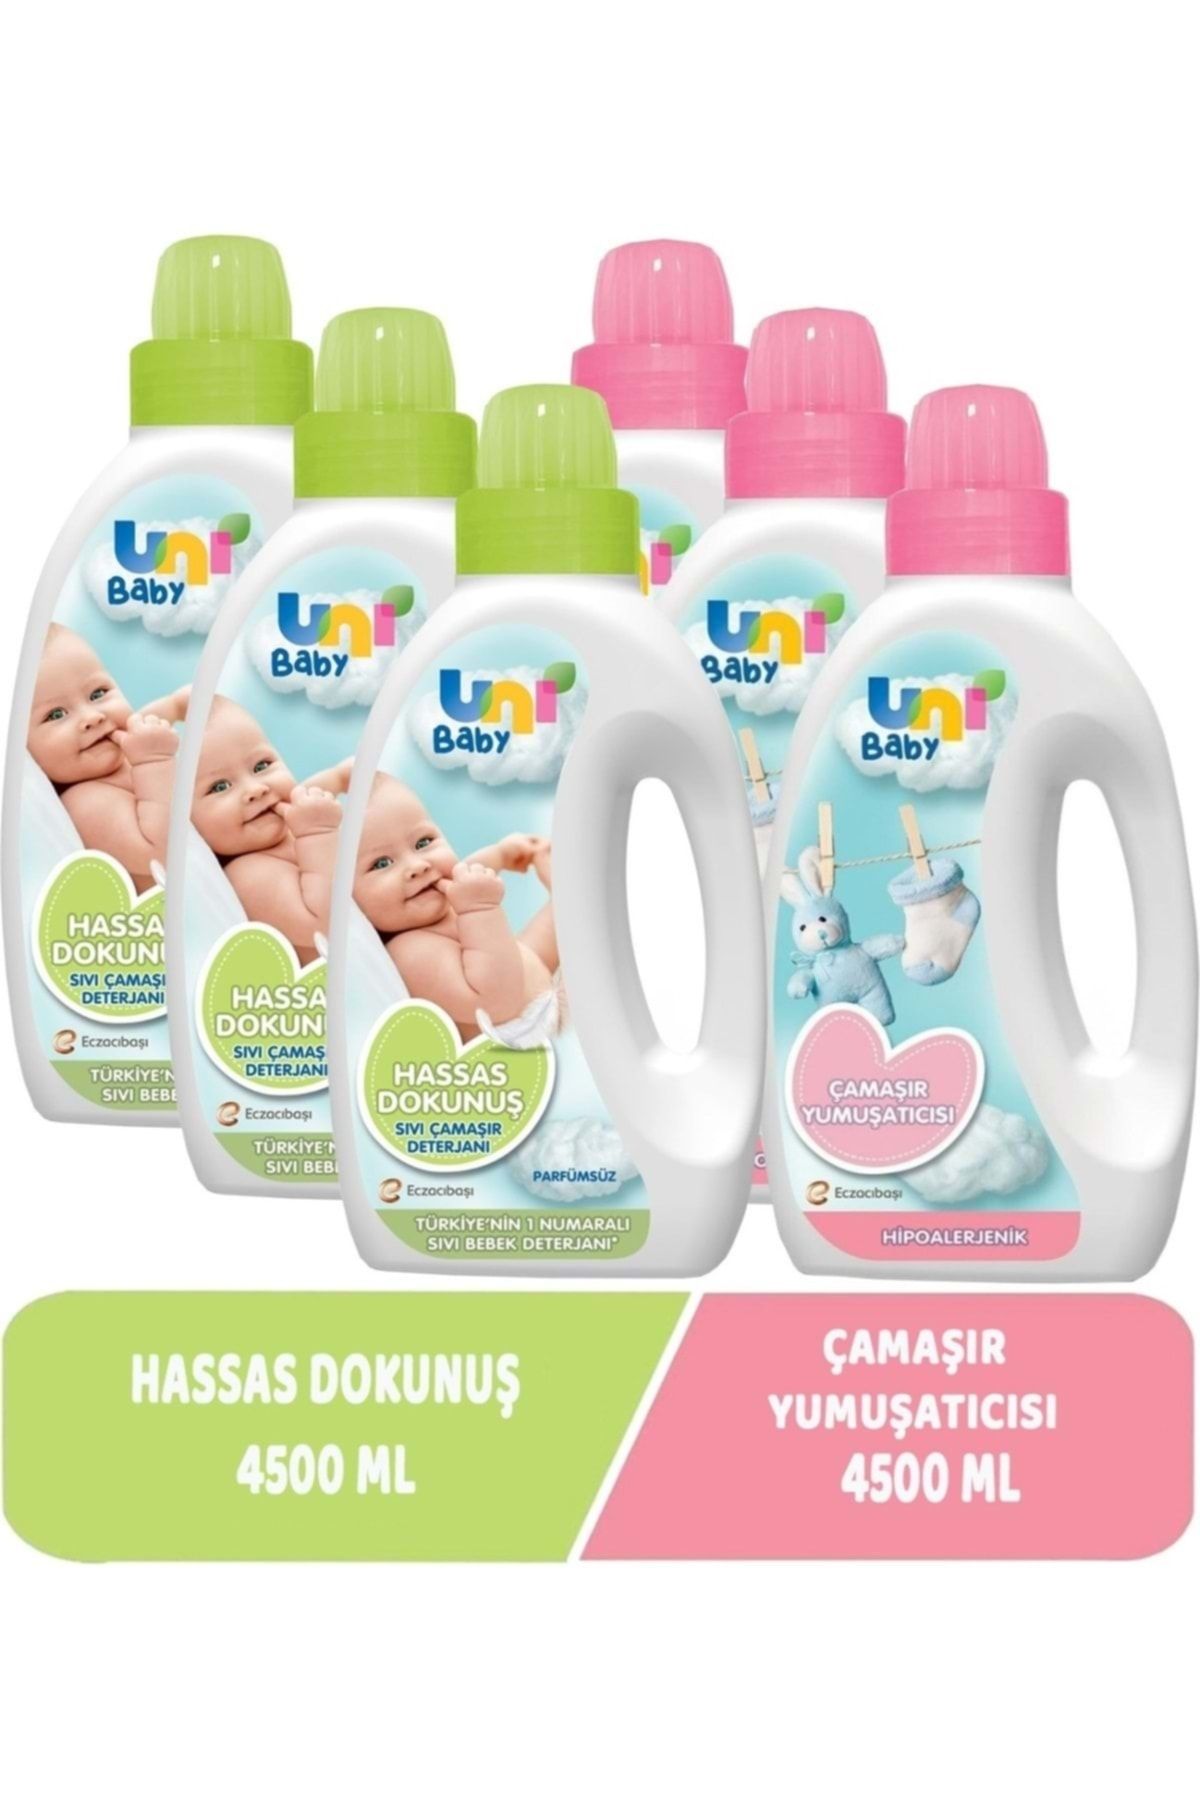 Uni Baby Çamaşır Deterjanı Sensitive 1500ml+yumuşatıcı 1500ml Hassas/hipoalerjenik Karma (6 Lı Set)